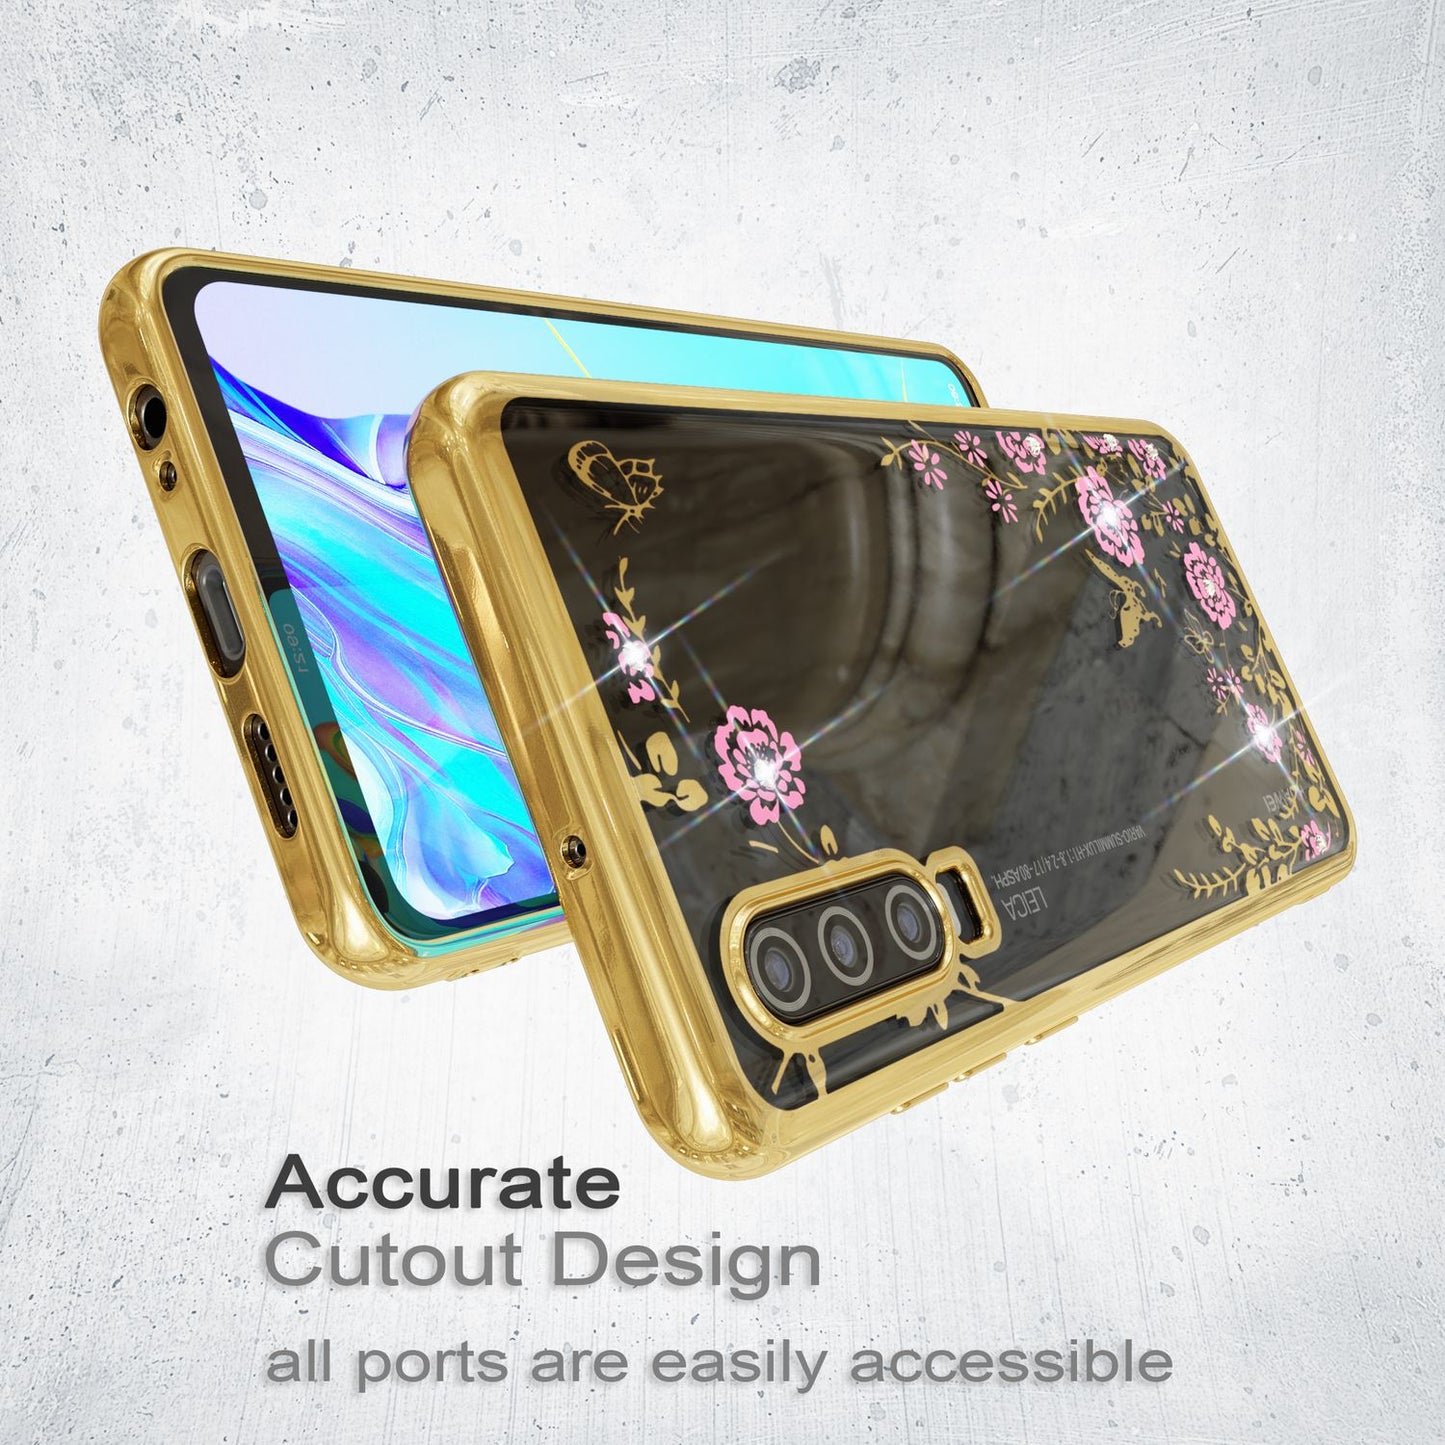 NALIA Handy Hülle für Huawei P30, Blumen-Muster Metall-Optik Schutz Cover Case